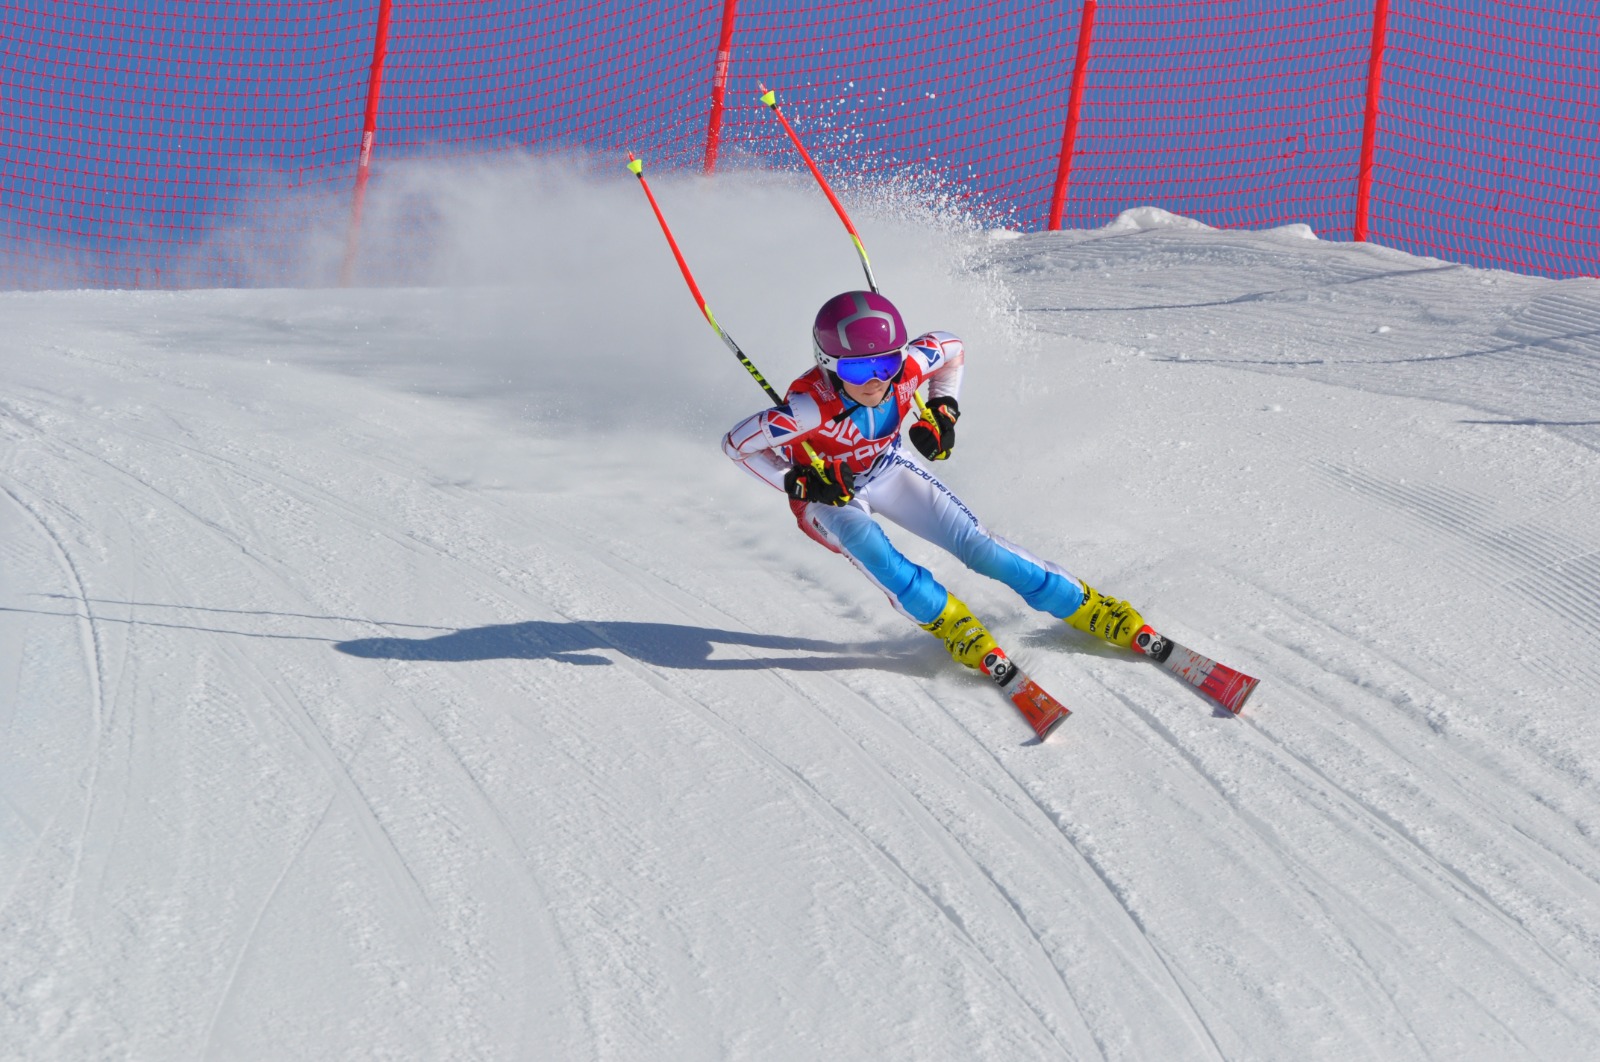 Next generation shows their talent at GB Alpine Championships Children’s Week